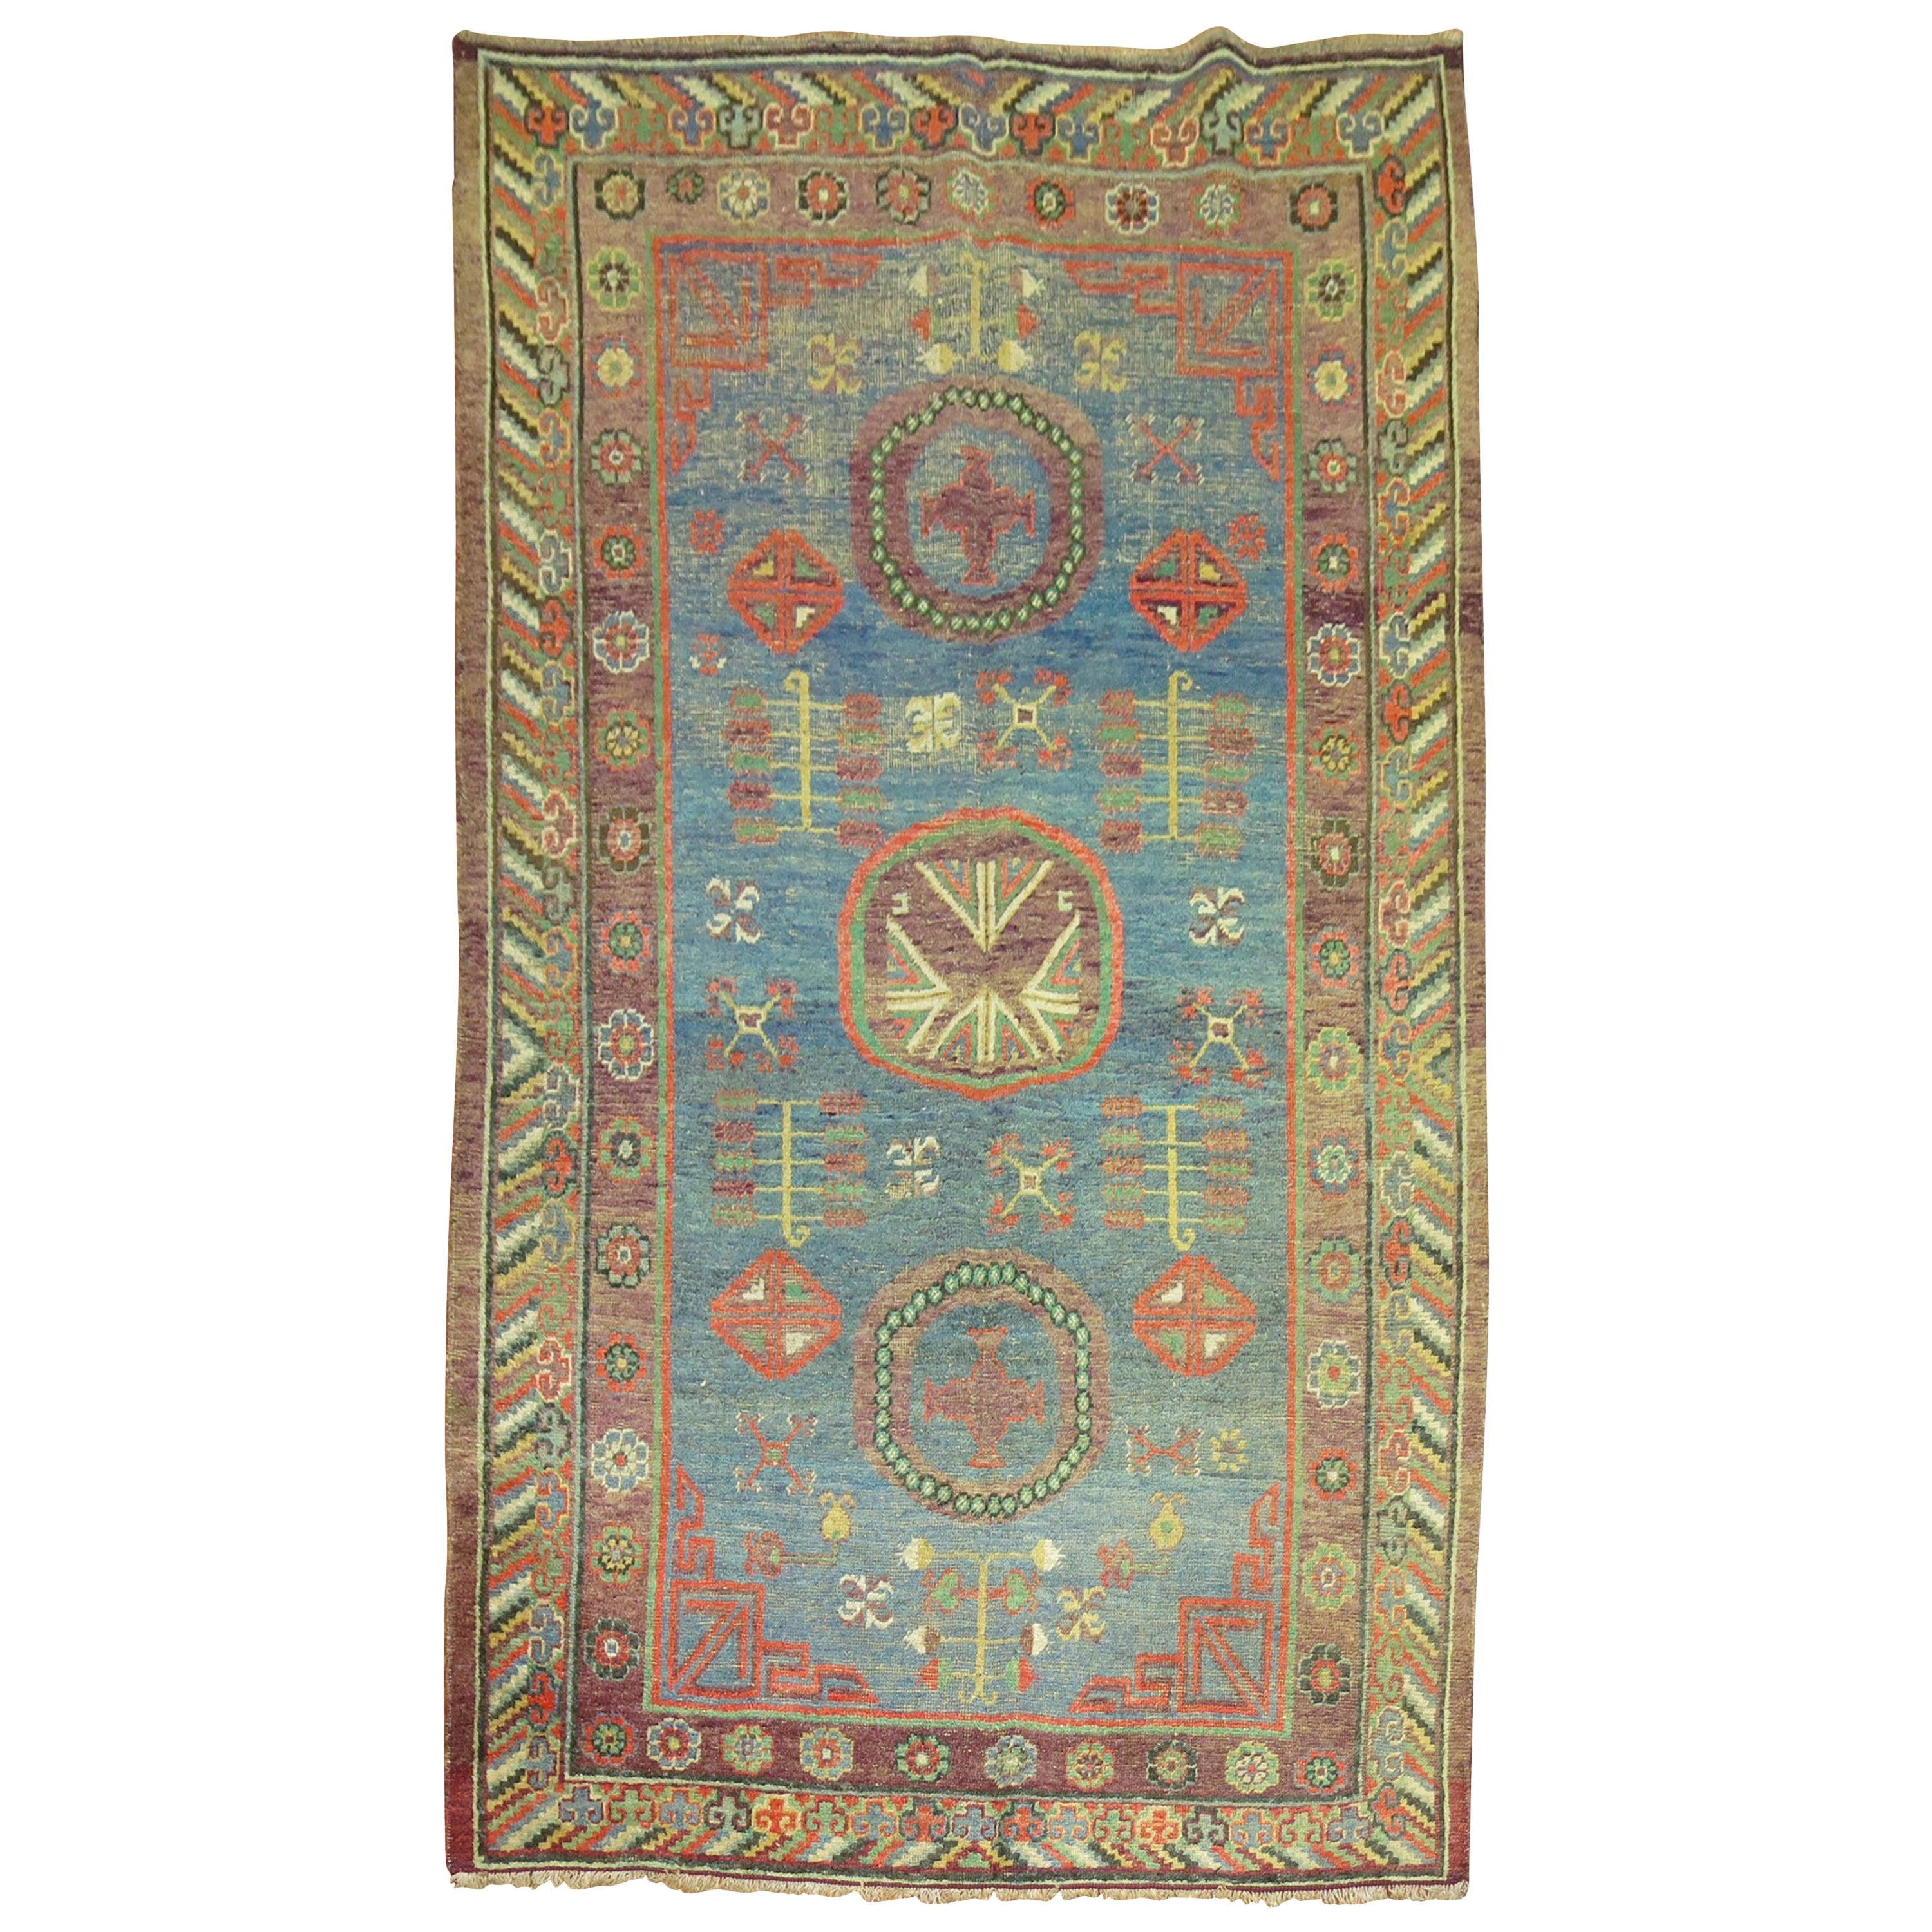 Skurriler blauer antiker Khotan-Teppich aus dem frühen 20. Jahrhundert